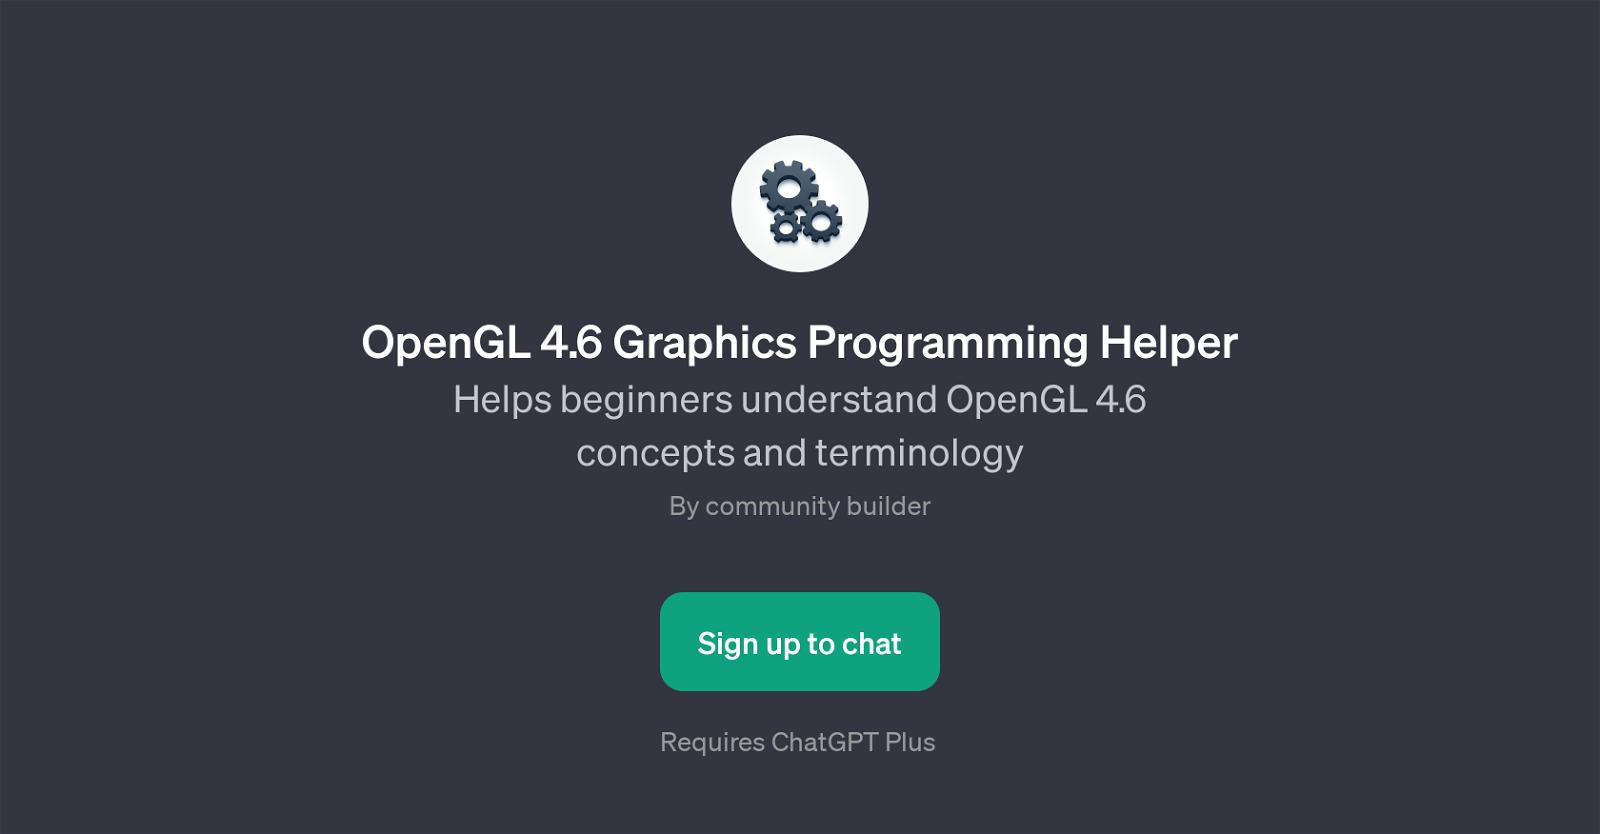 OpenGL 4.6 Graphics Programming Helper website